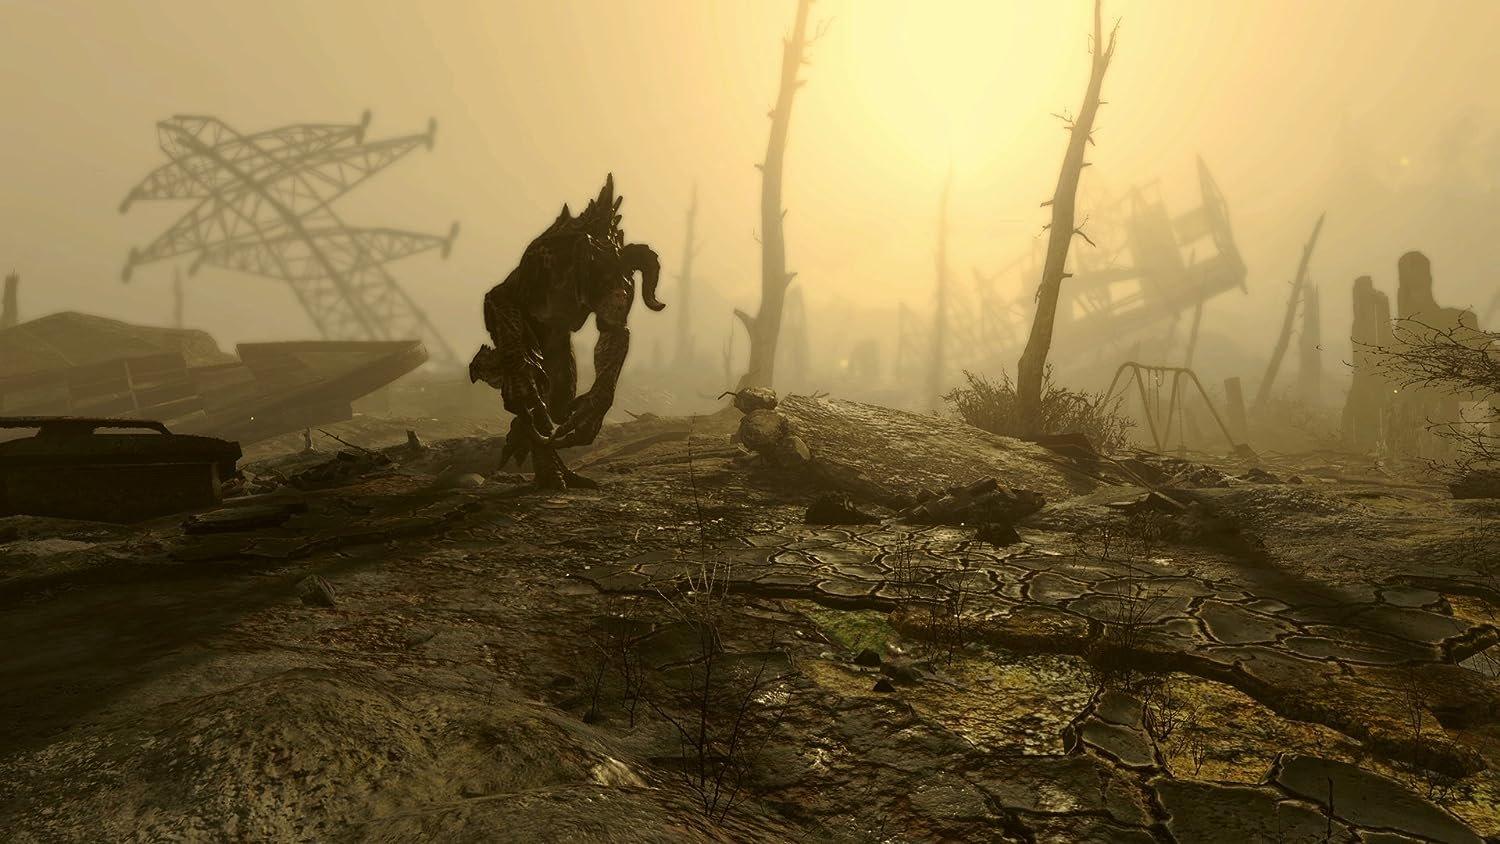 Fallout 4 - PlayStation 4, PlayStation 4